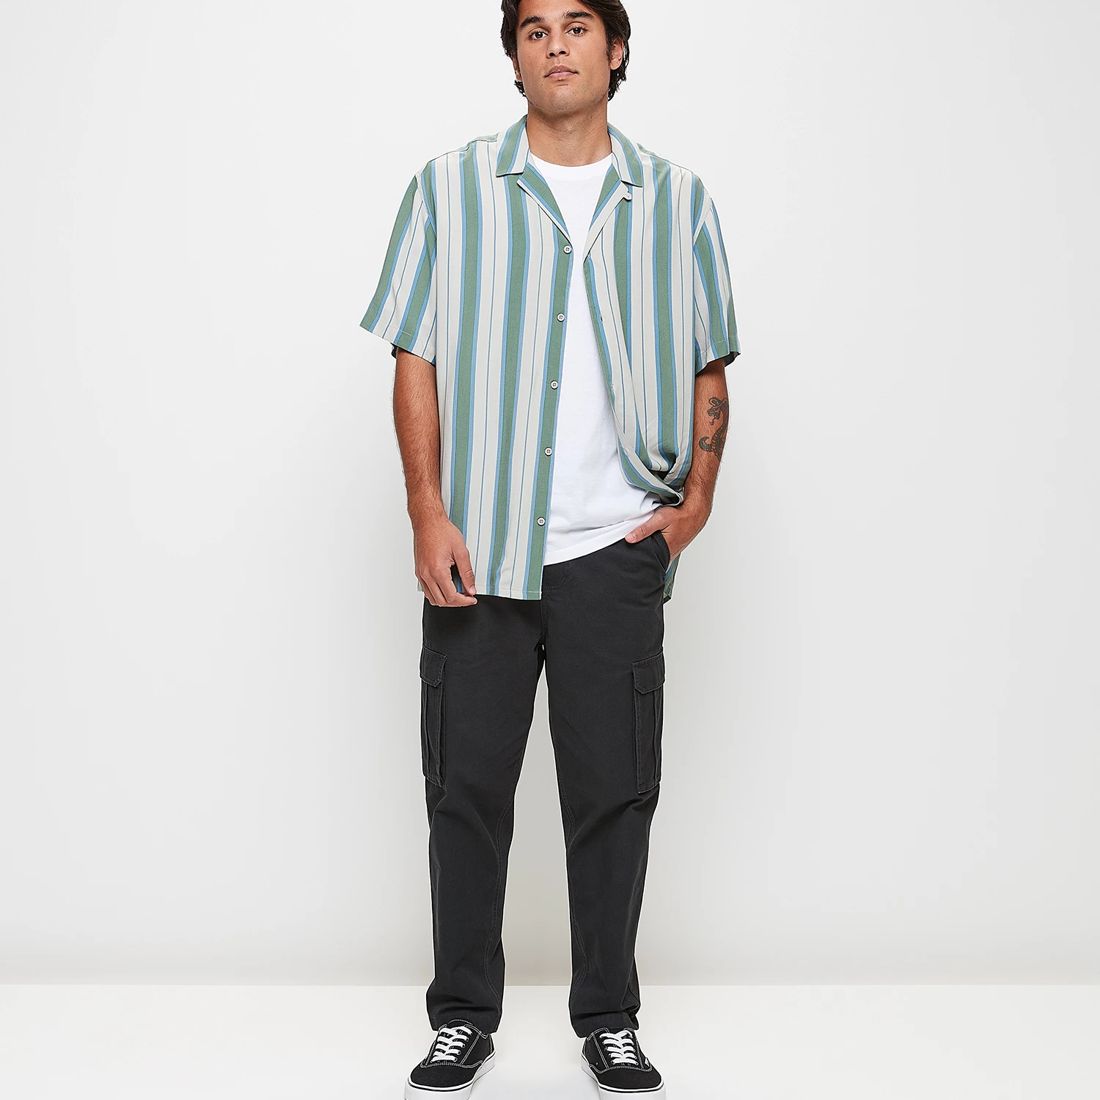 Commons Vertical Stripe Short Sleeve Shirt | Target Australia